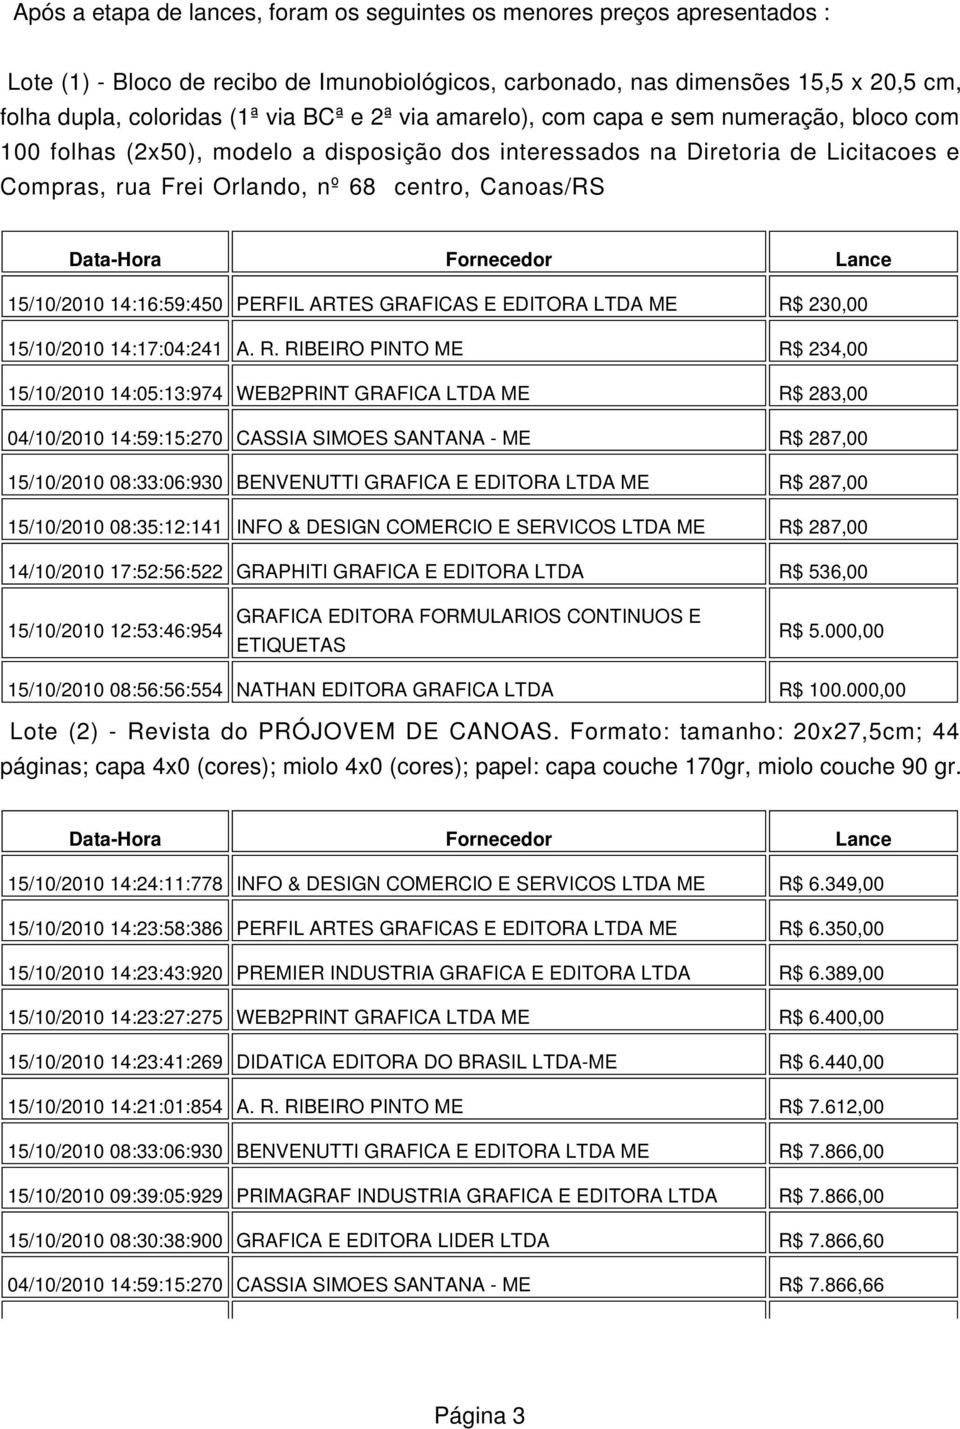 Data-Hora Fornecedor Lance 15/10/2010 14:16:59:450 PERFIL ARTES GRAFICAS E EDITORA LTDA ME R$